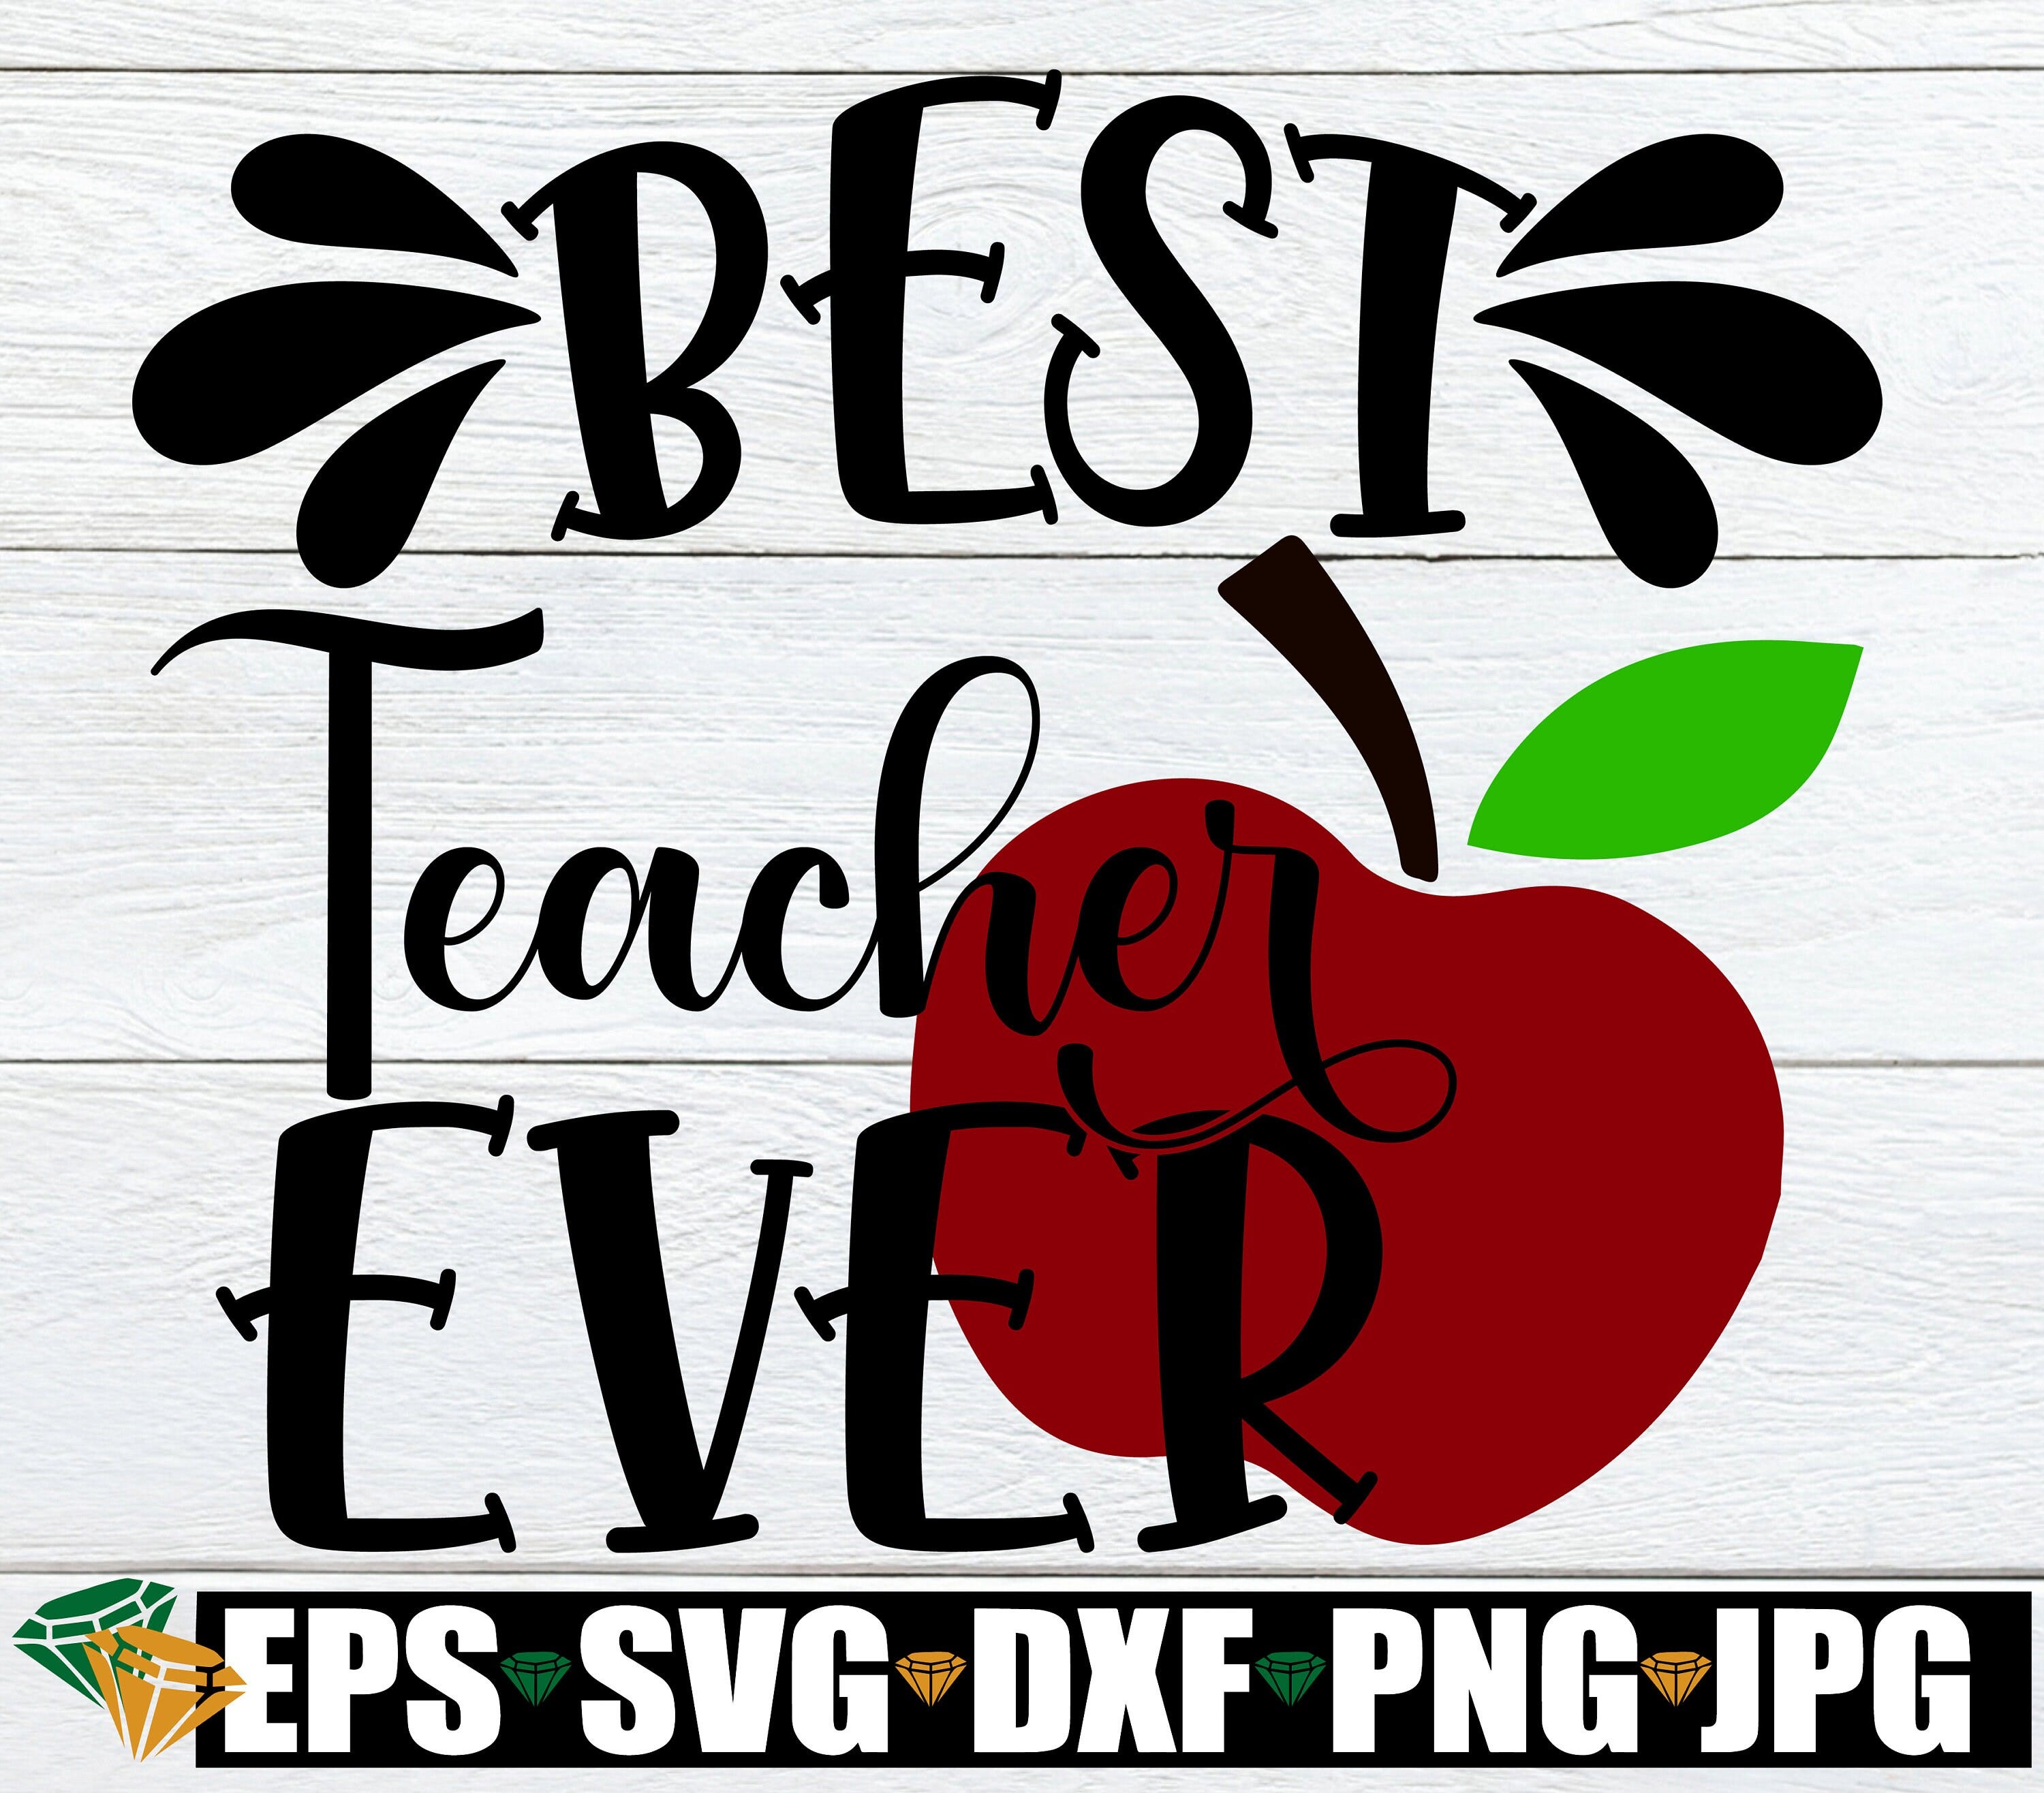 Best Teacher Ever, Teacher Appreciation, Teacher svg, Apple svg, Gift For Teacher svg, Best Teacher svg, Cut File, SVG, Digital Download